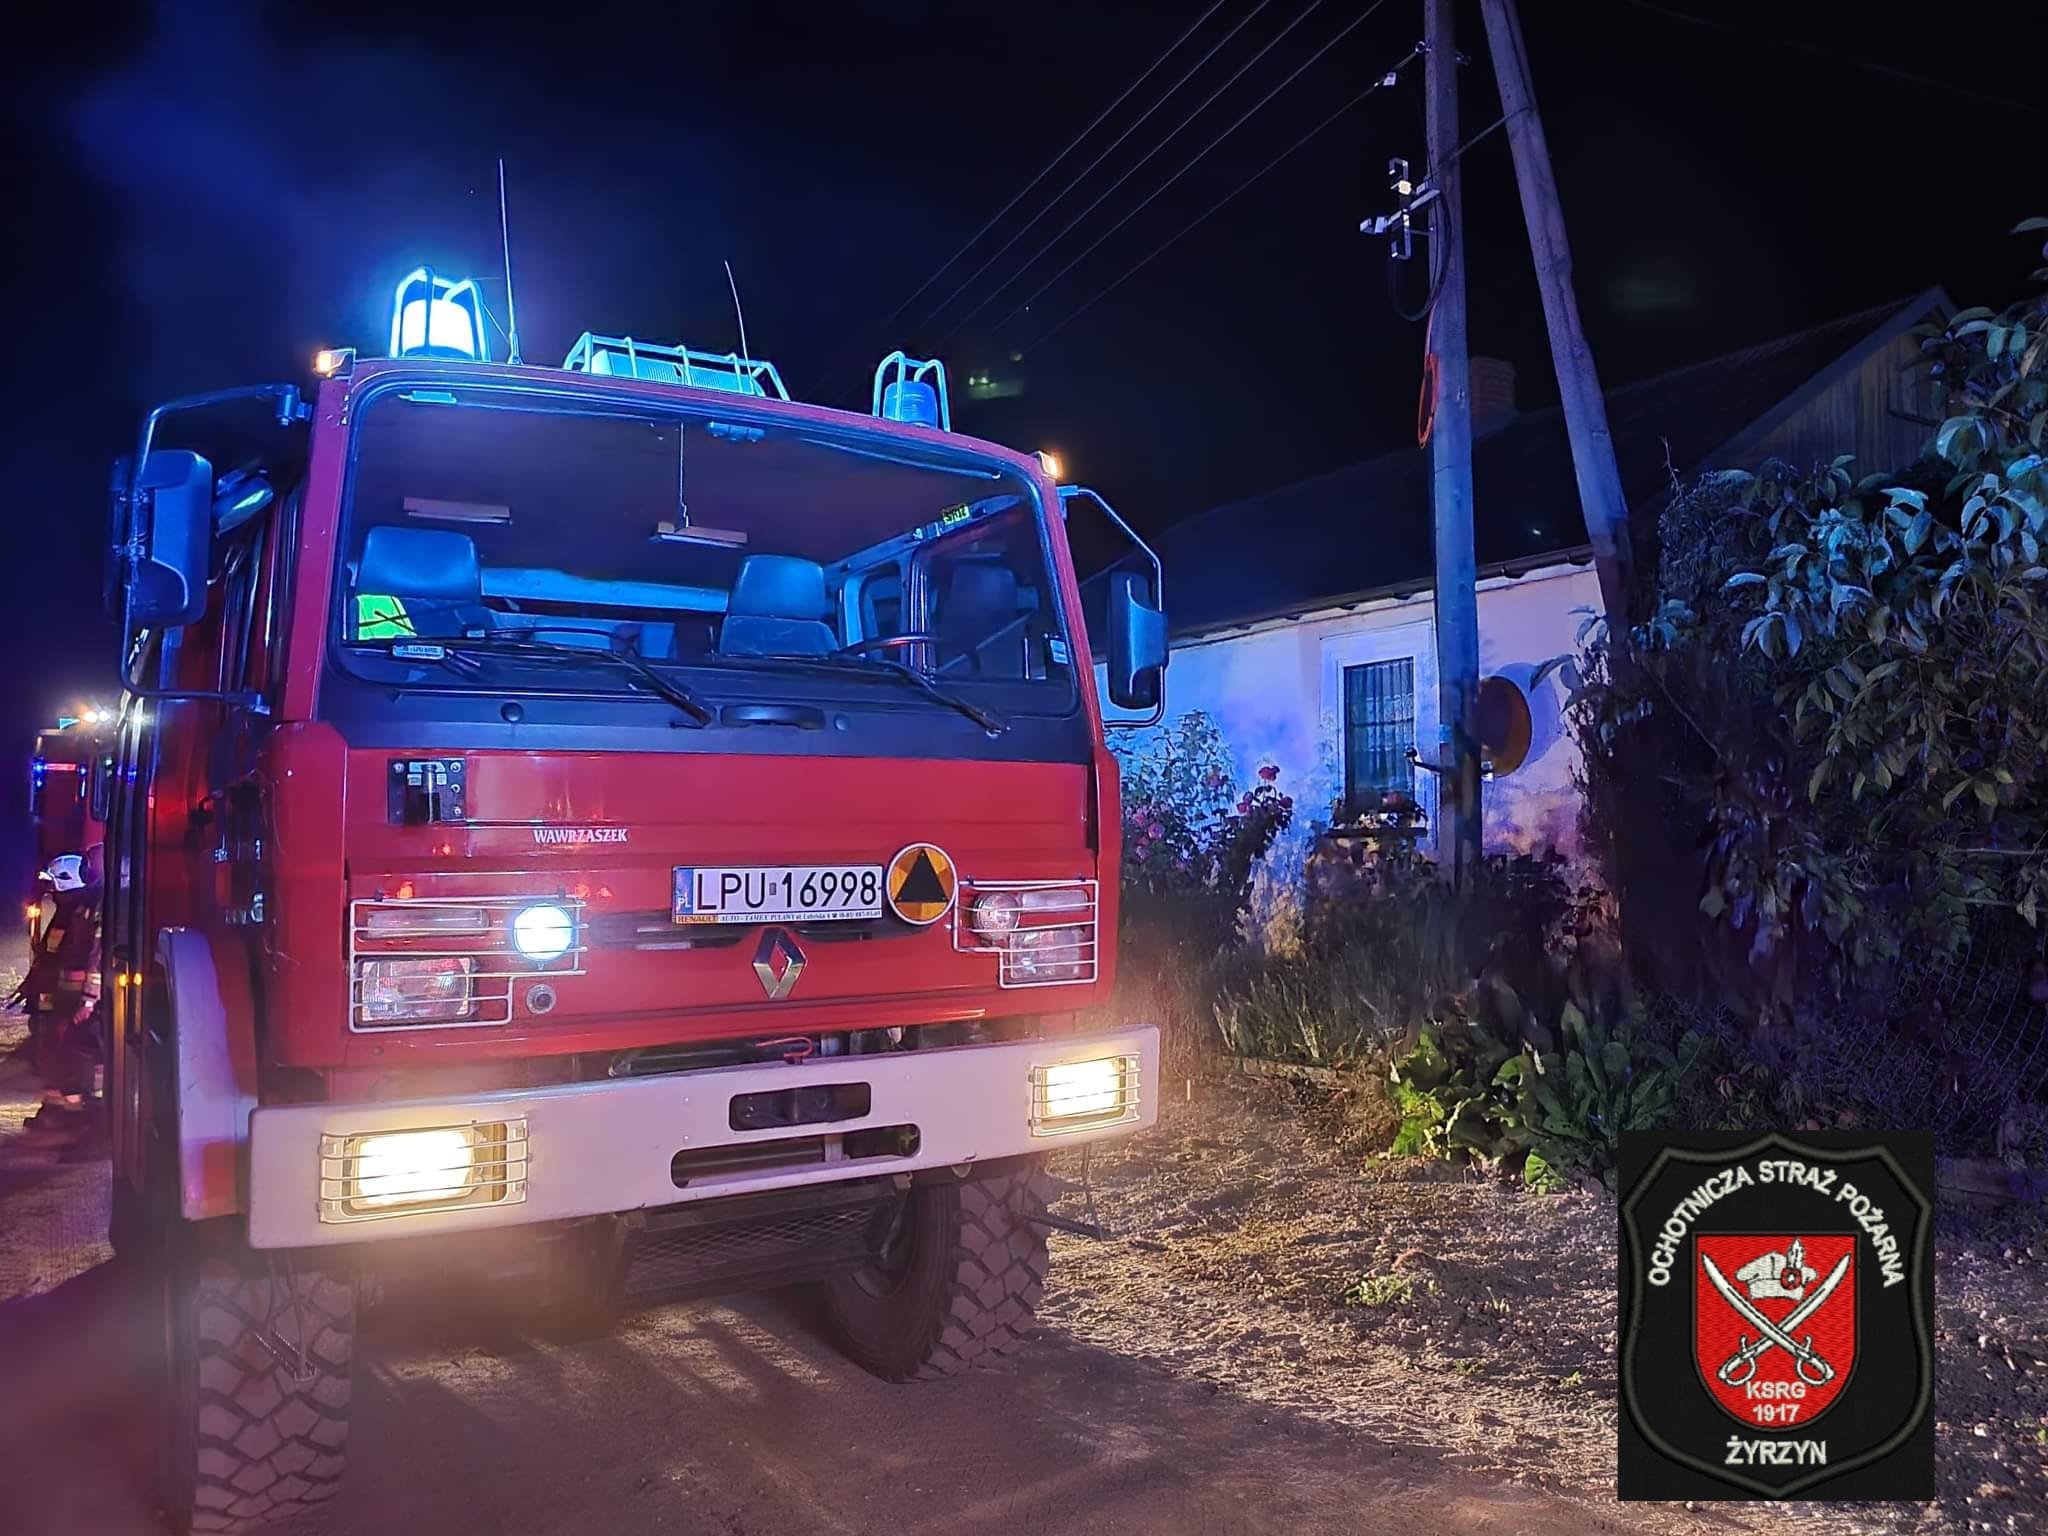 Sześć zastępów straży pojechało gasić pożar. Zgłaszającej „tylko się wydawało, że się pali” (zdjęcia)